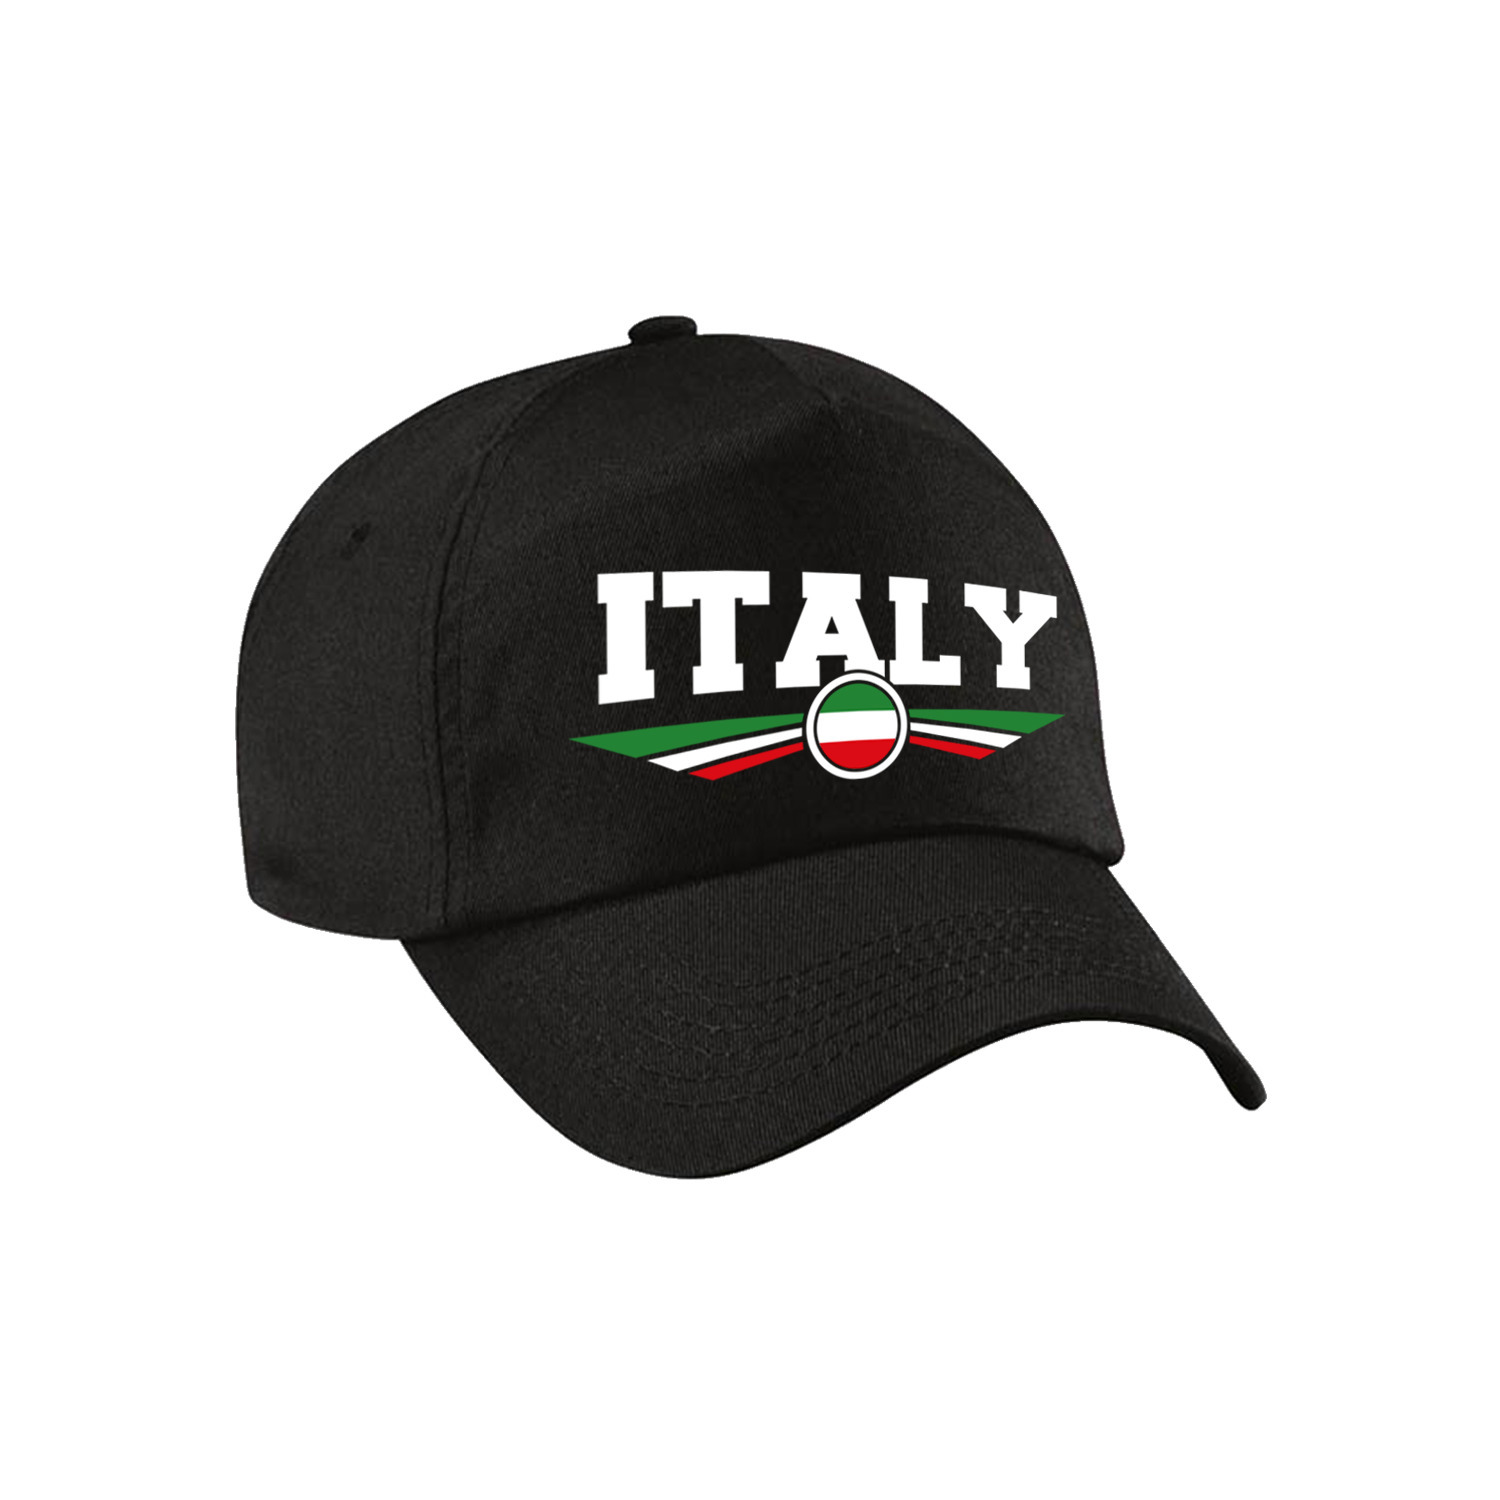 Italie-Italy landen pet-baseball cap zwart kinderen